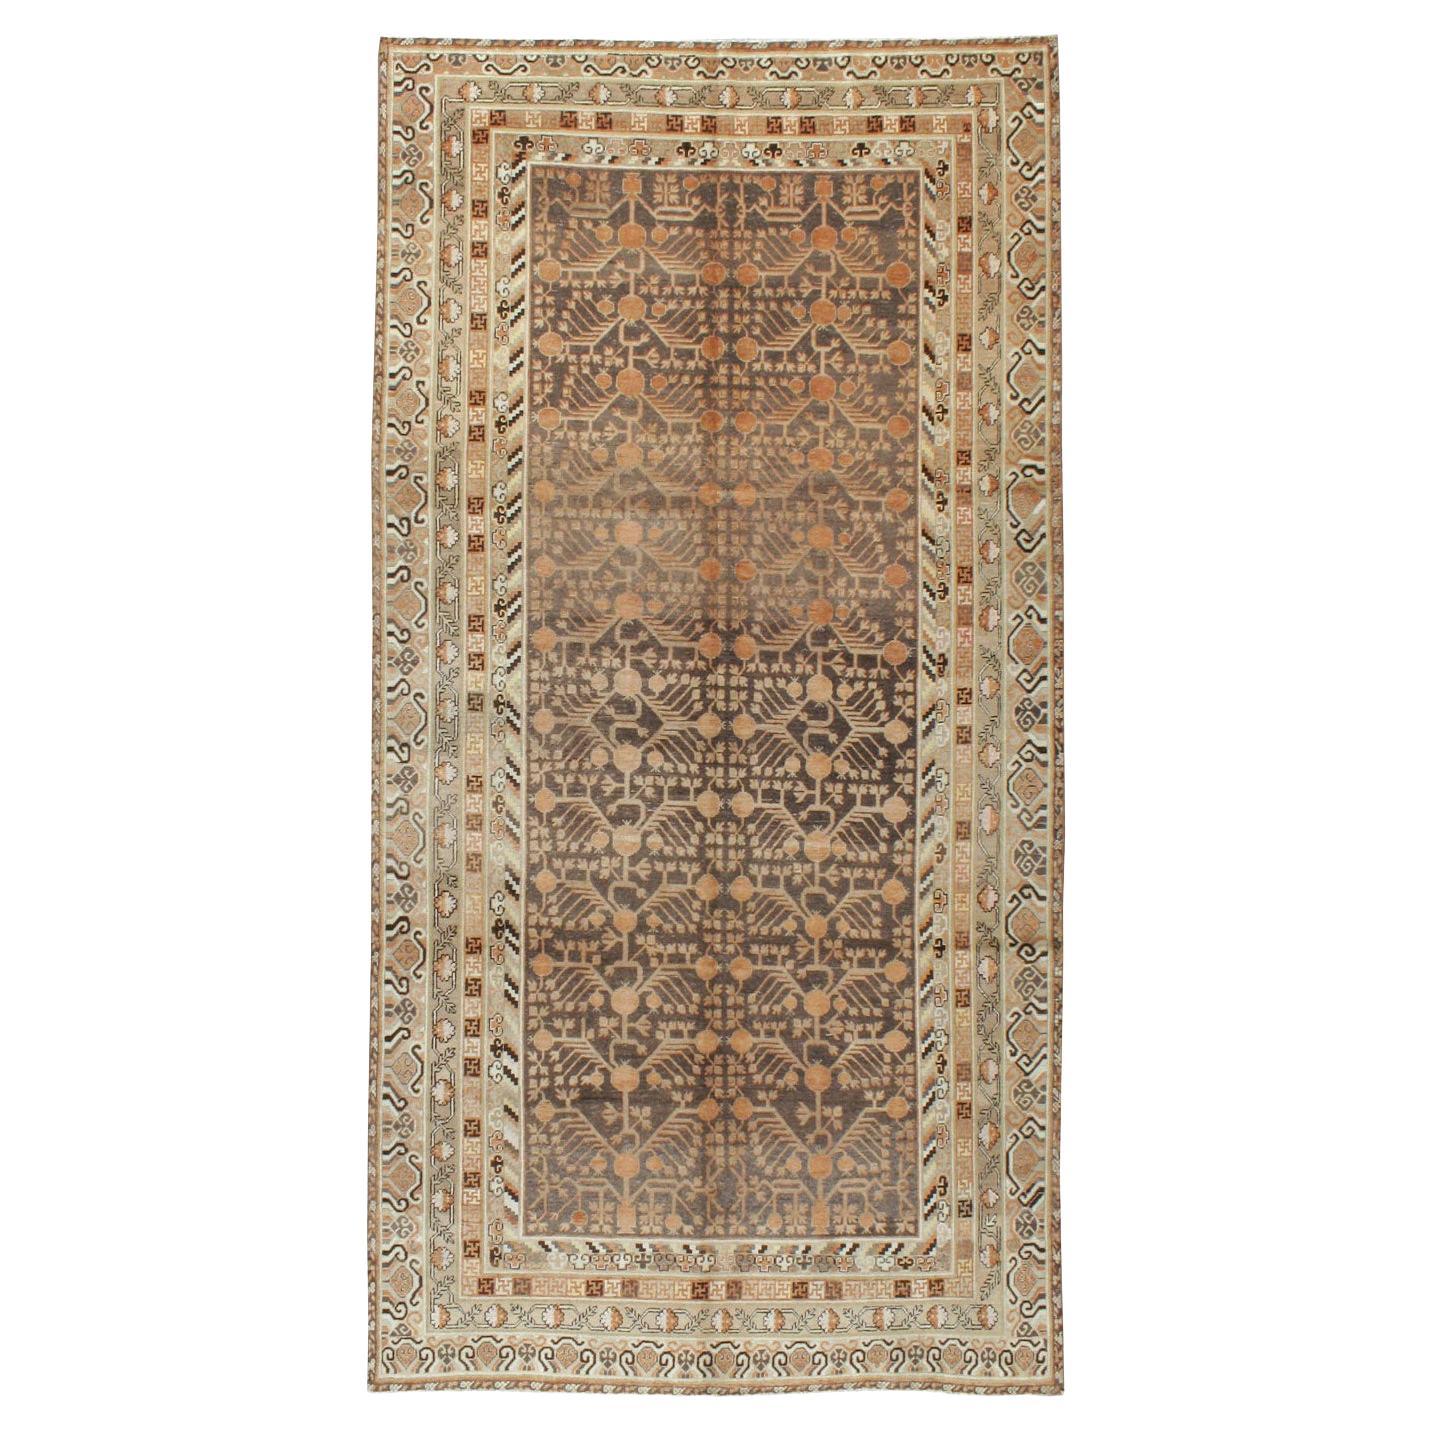 Handgefertigter ostaturkestanischer Khotan-Galerie-Teppich aus dem frühen 20. Jahrhundert